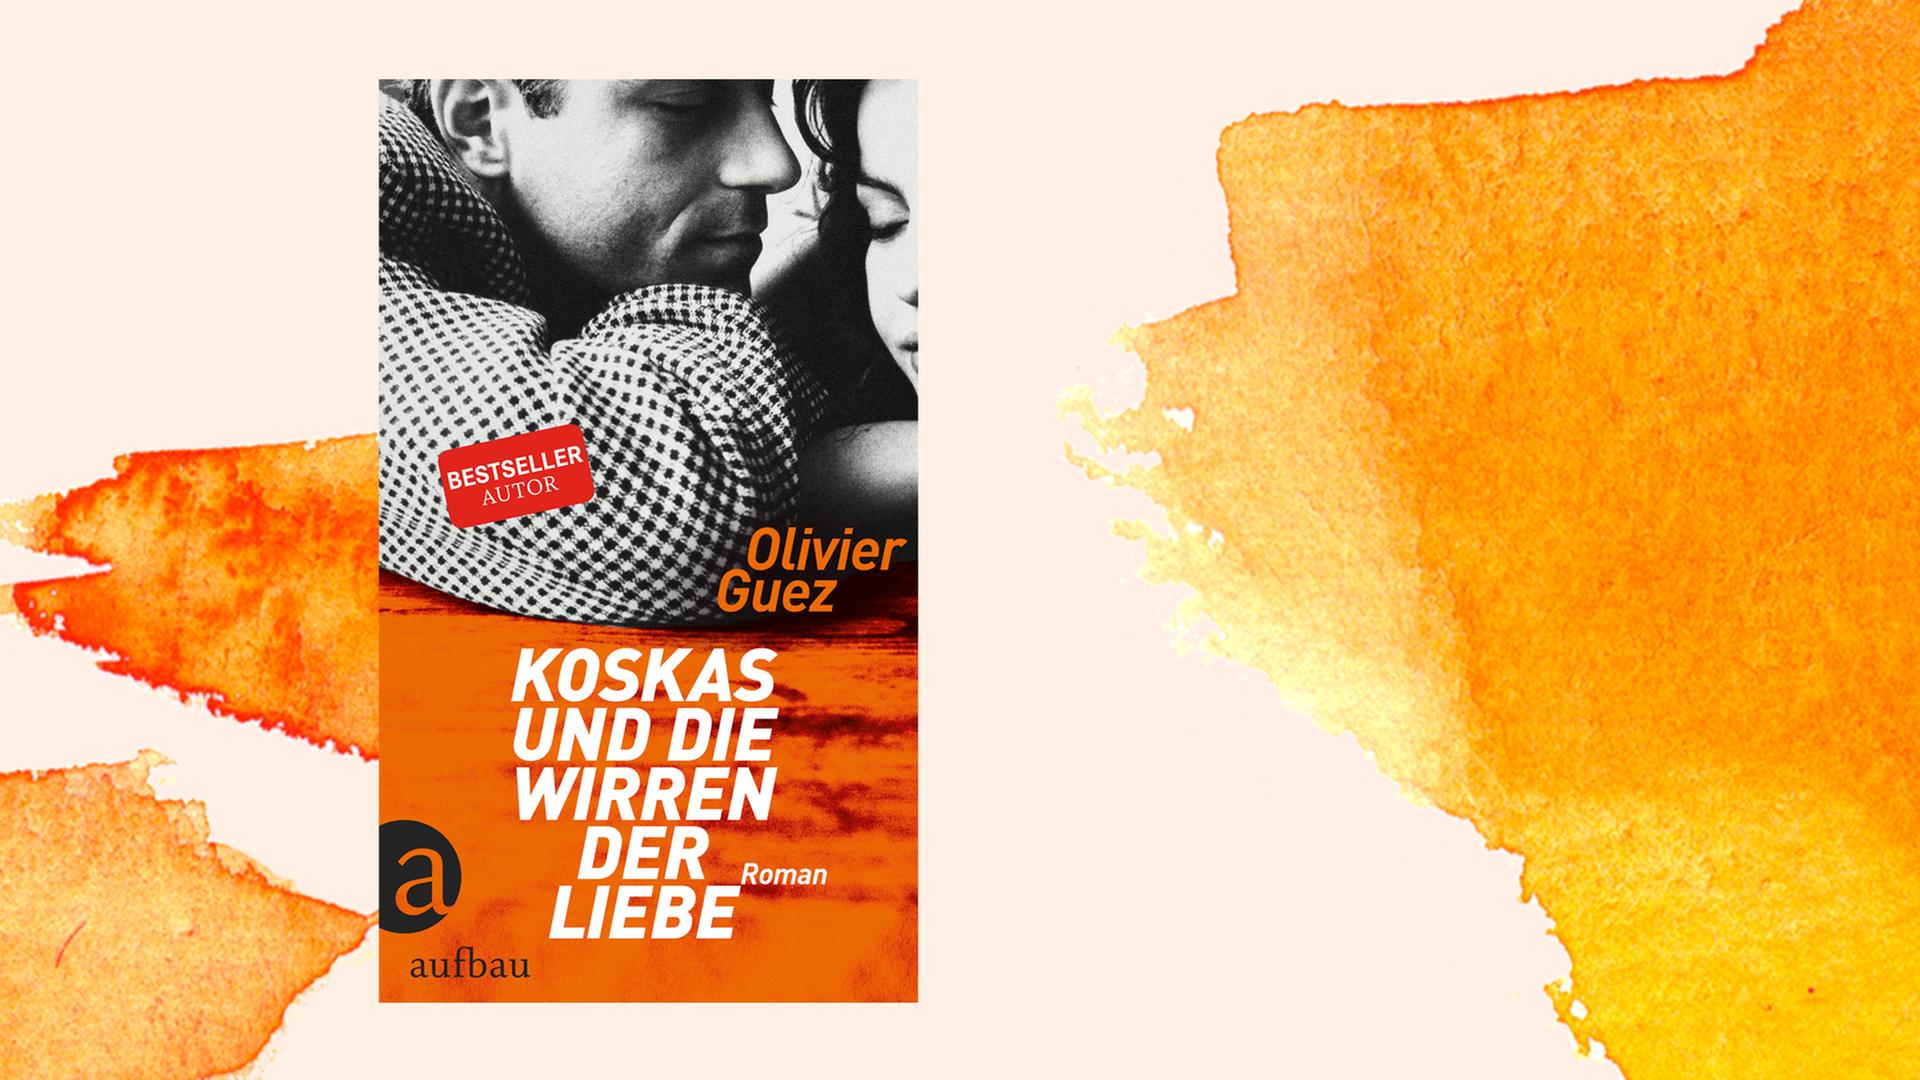 Zu sehen ist das Cover des Buchs "Koskas und die Wirren der Liebe" von Olivier Guez.